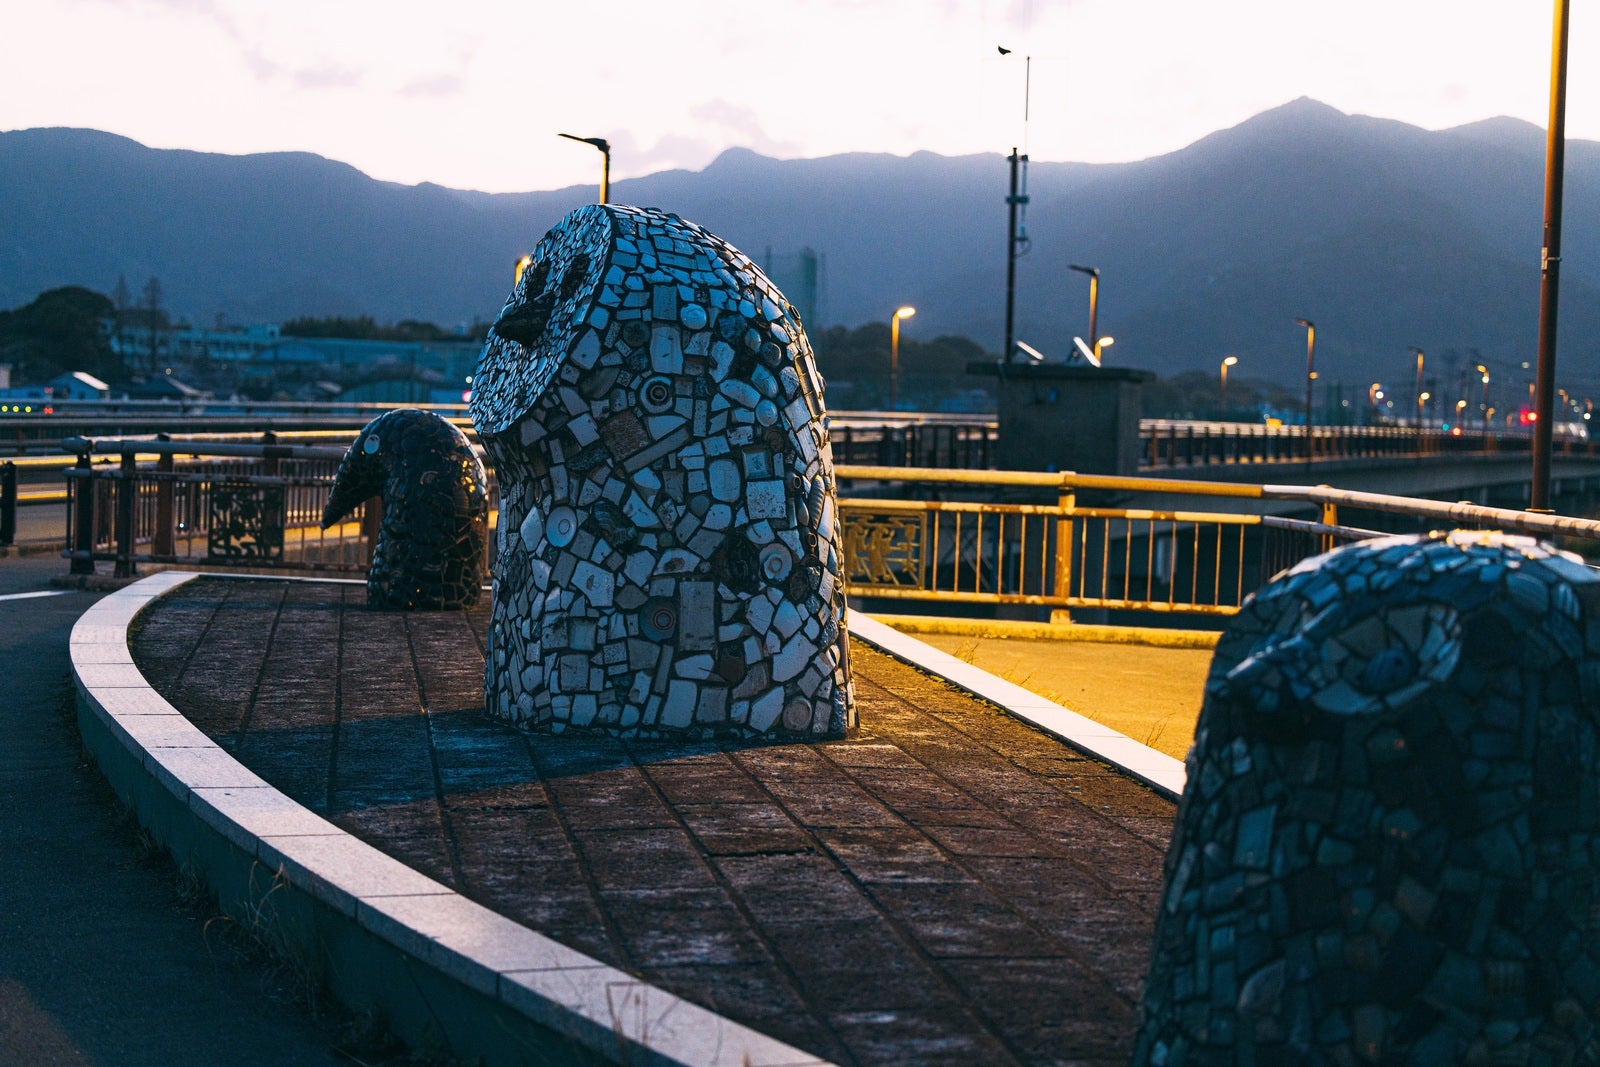 「朝を待つ日の出橋のフクロウ像」の写真